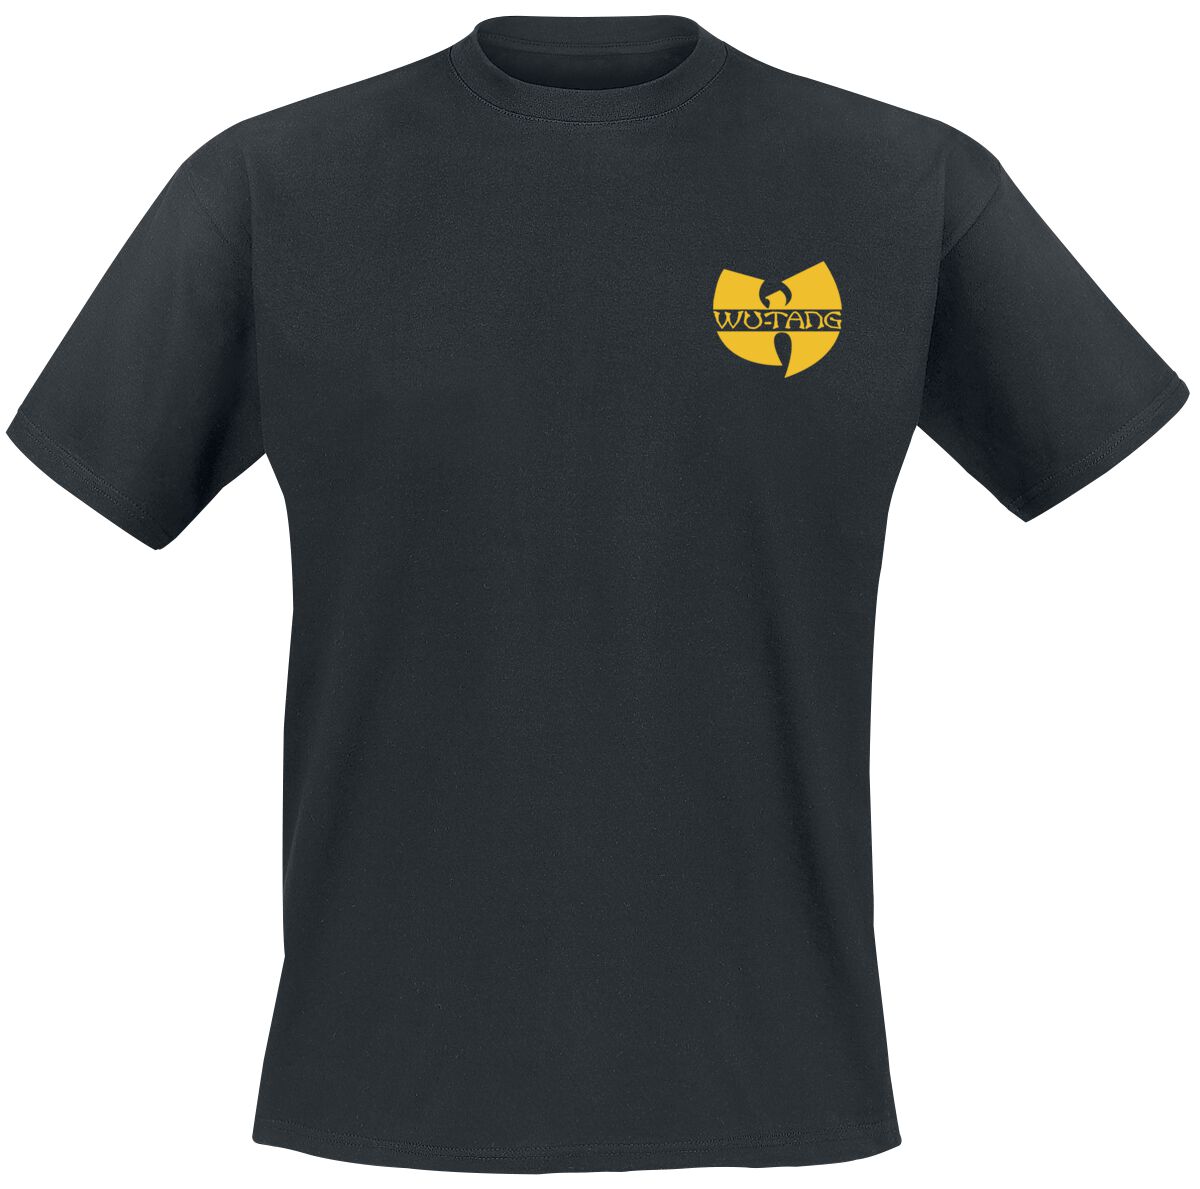 Wu-Tang Clan T-Shirt - Black Logo - S bis XXL - für Männer - Größe M - schwarz  - Lizenziertes Merchandise!